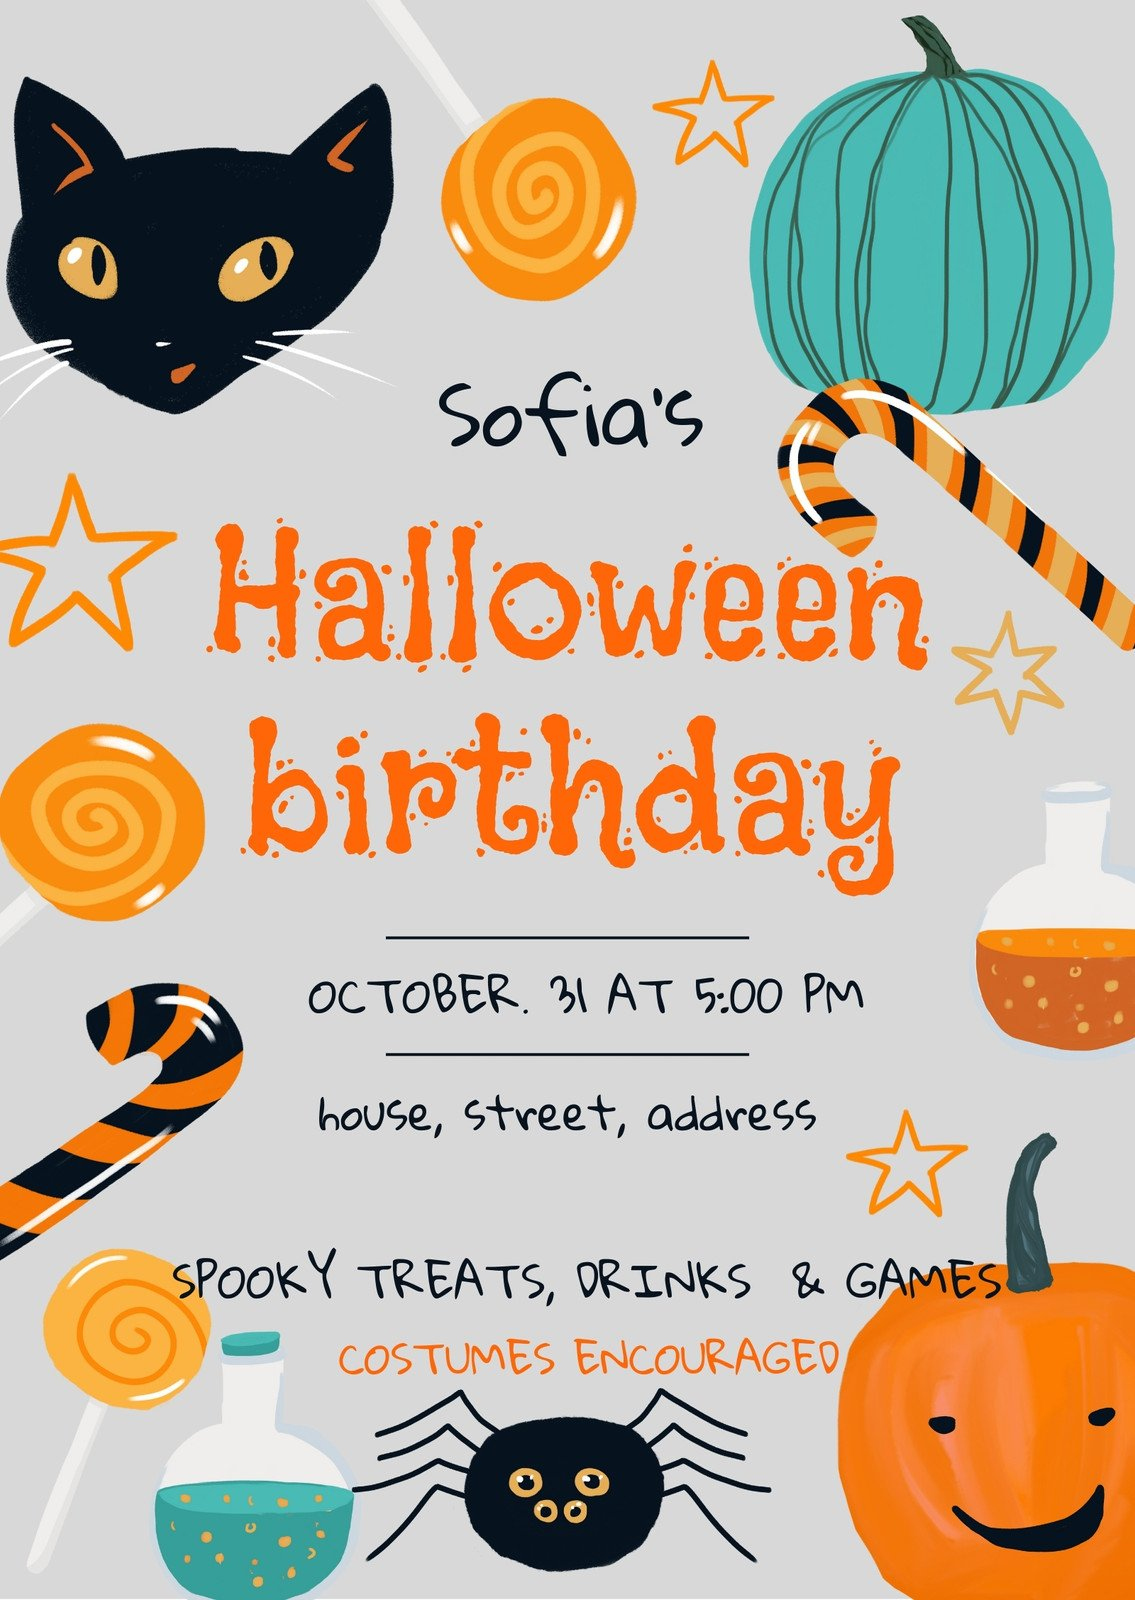 Free Custom Printable Halloween Invitation Templates | Canva inside Free Printable Halloween Party Invitations